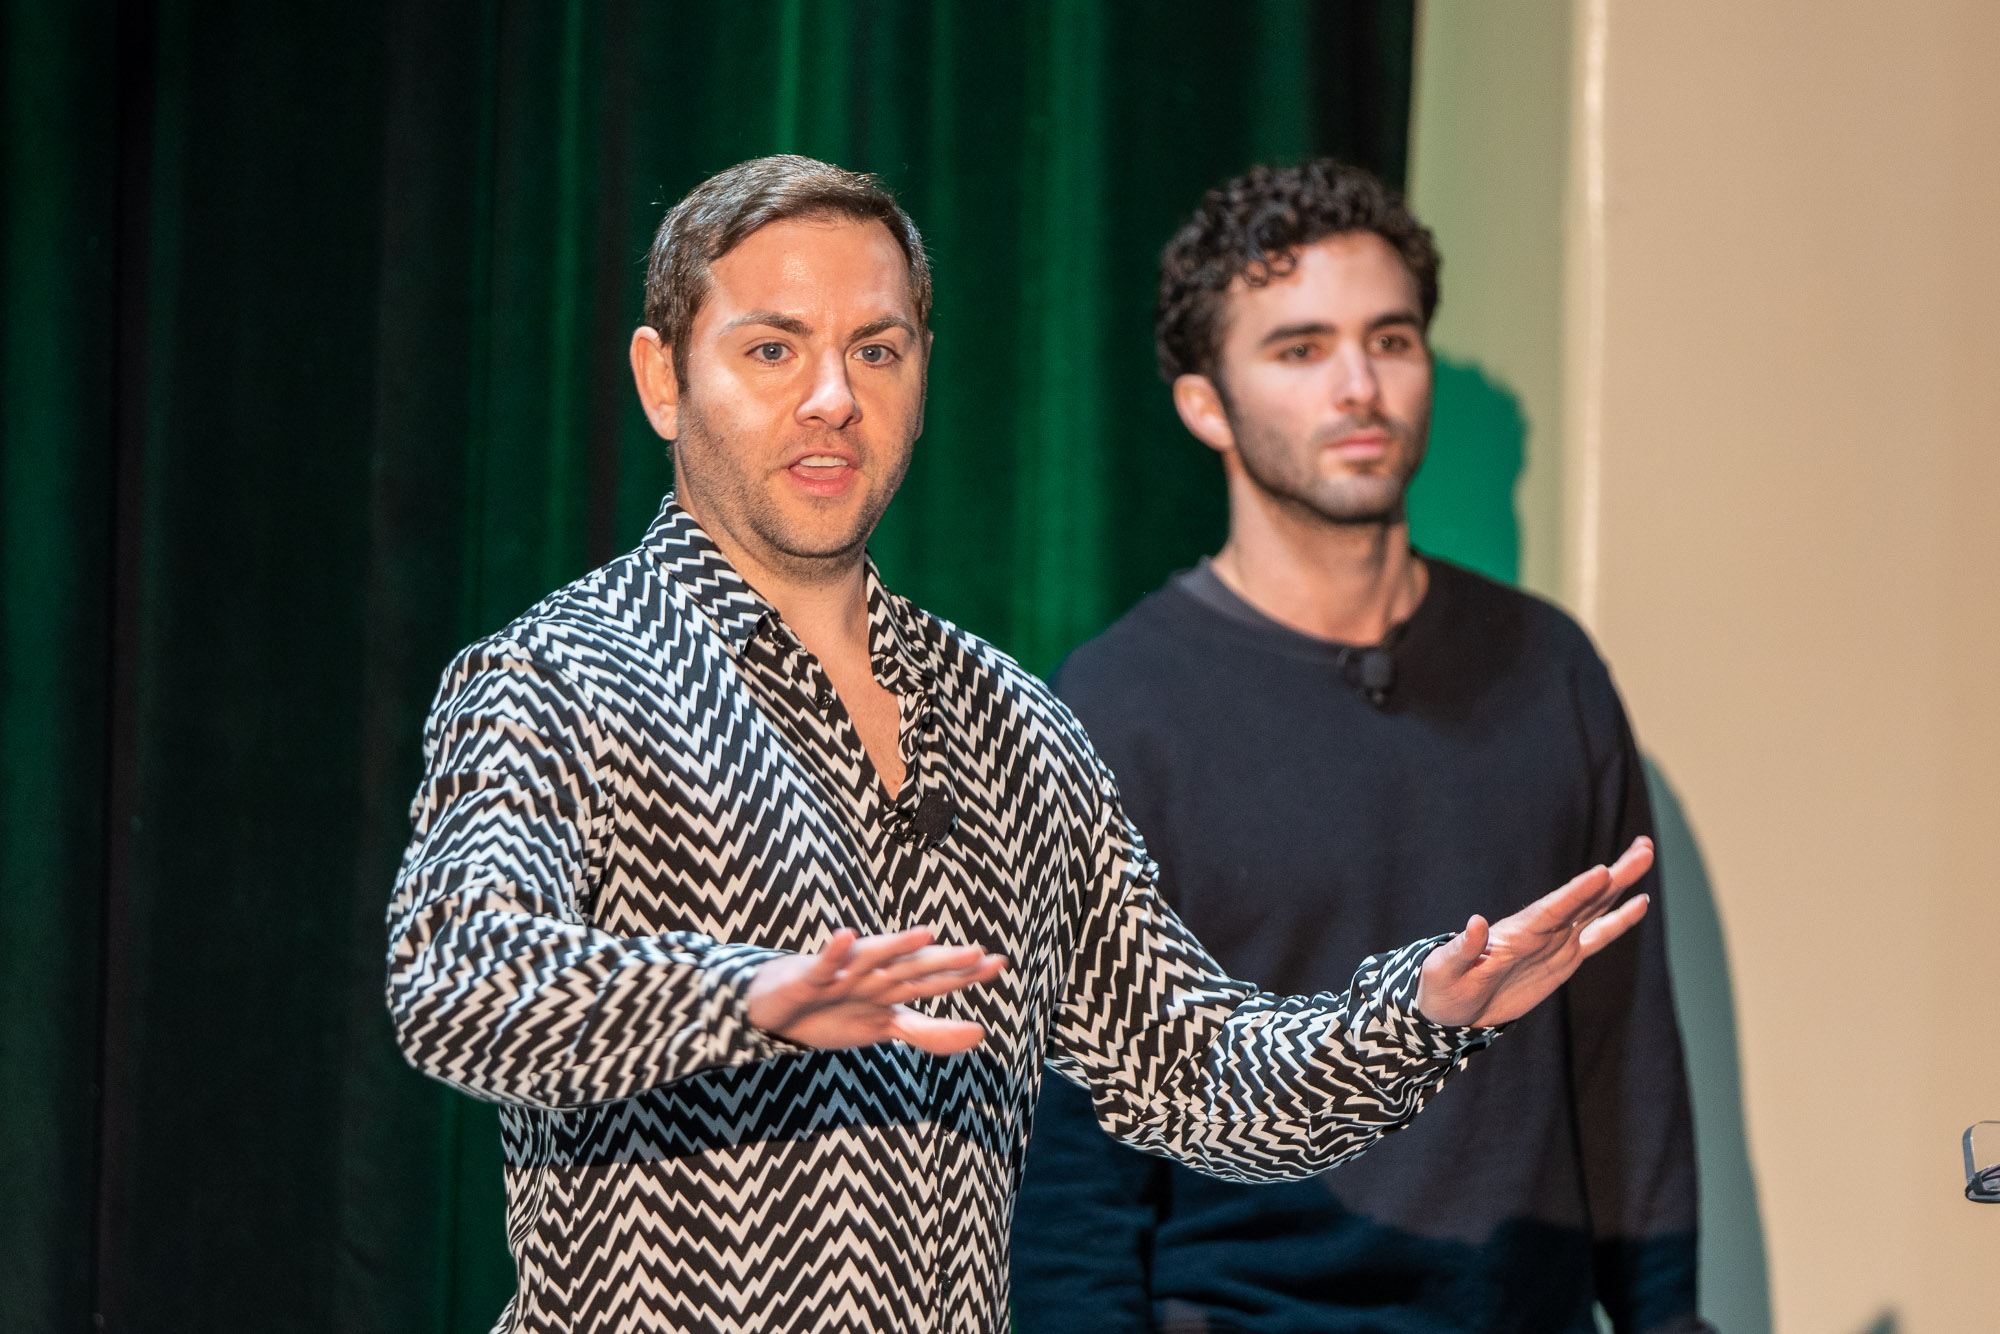 Josh Machiz, socio de Redpoint, y Rashad Assir, director de contenido de Redpoint, hablan sobre "Cómo convertir tu startup en una estrella social" en TechCrunch Early Stage en Boston el 20 de abril de 2023. Créditos de imagen: Haje Jan Kamps / TechCrunch